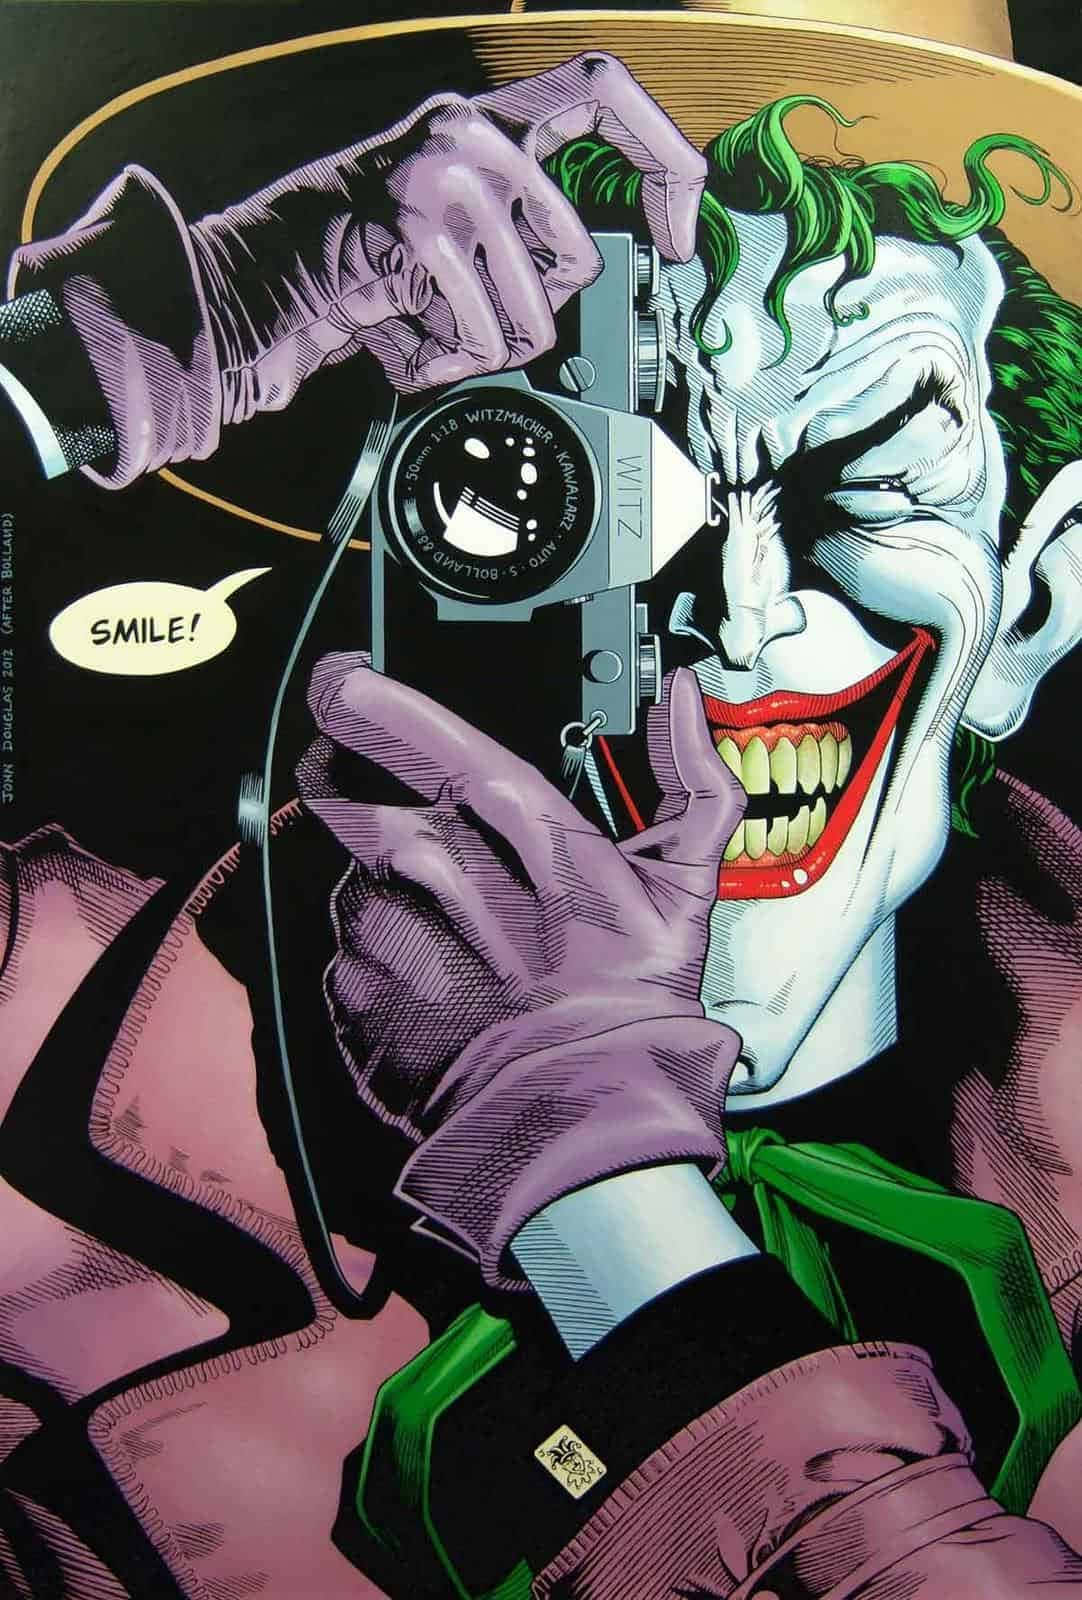 The Joker's sinister smile in The Killing Joke Wallpaper